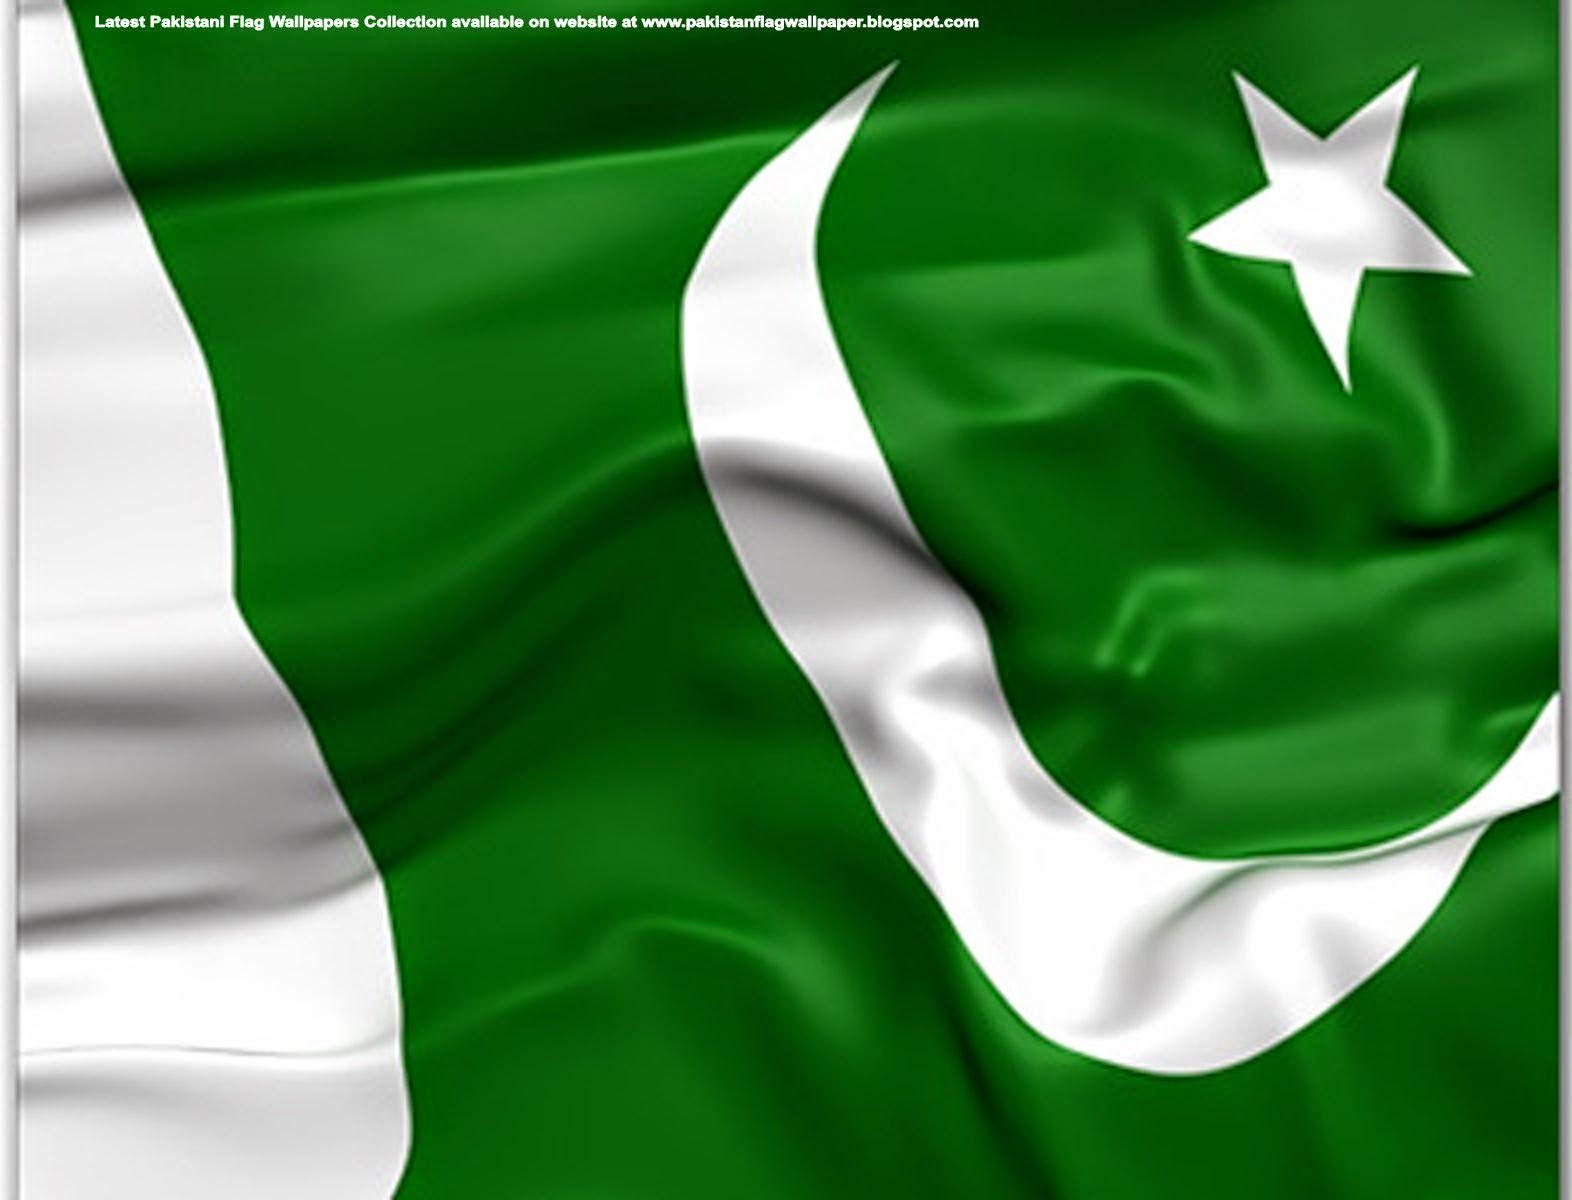 Pakistan Flag Wallpaper: Pakistan Flag Picture